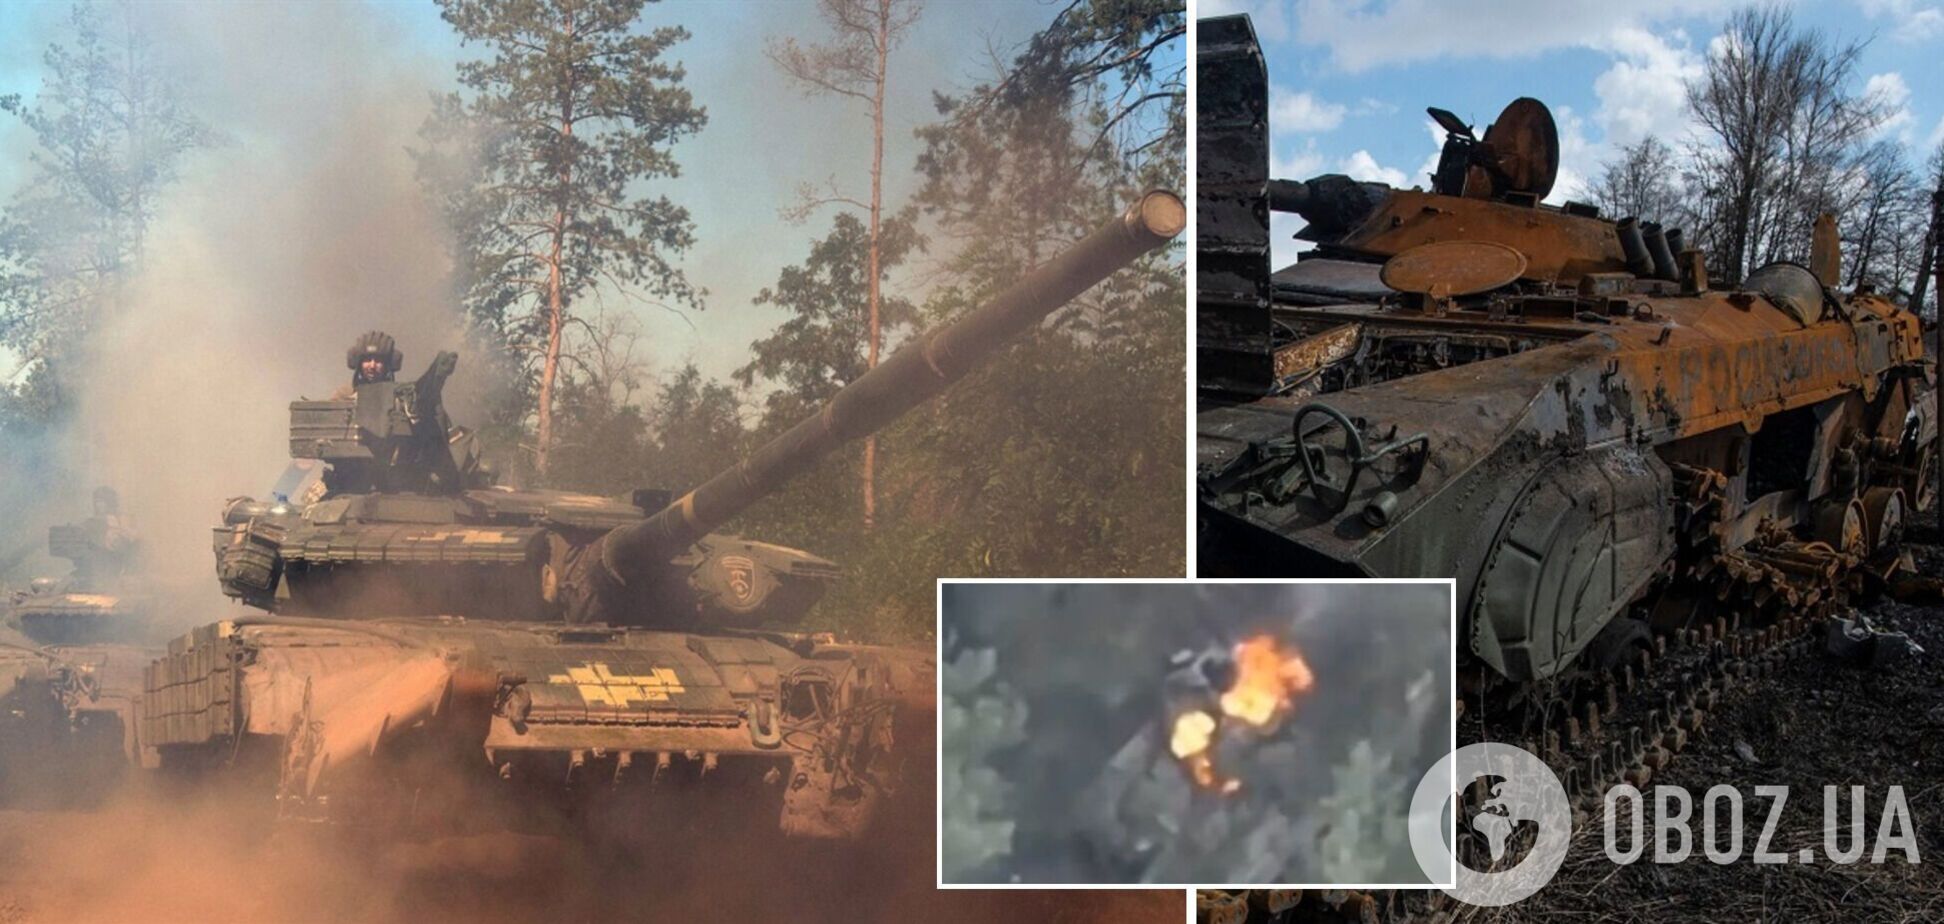 'Вспыхнул как факел': воины 30-й ОМБр показали уничтожение еще одного танка оккупантов. Видео